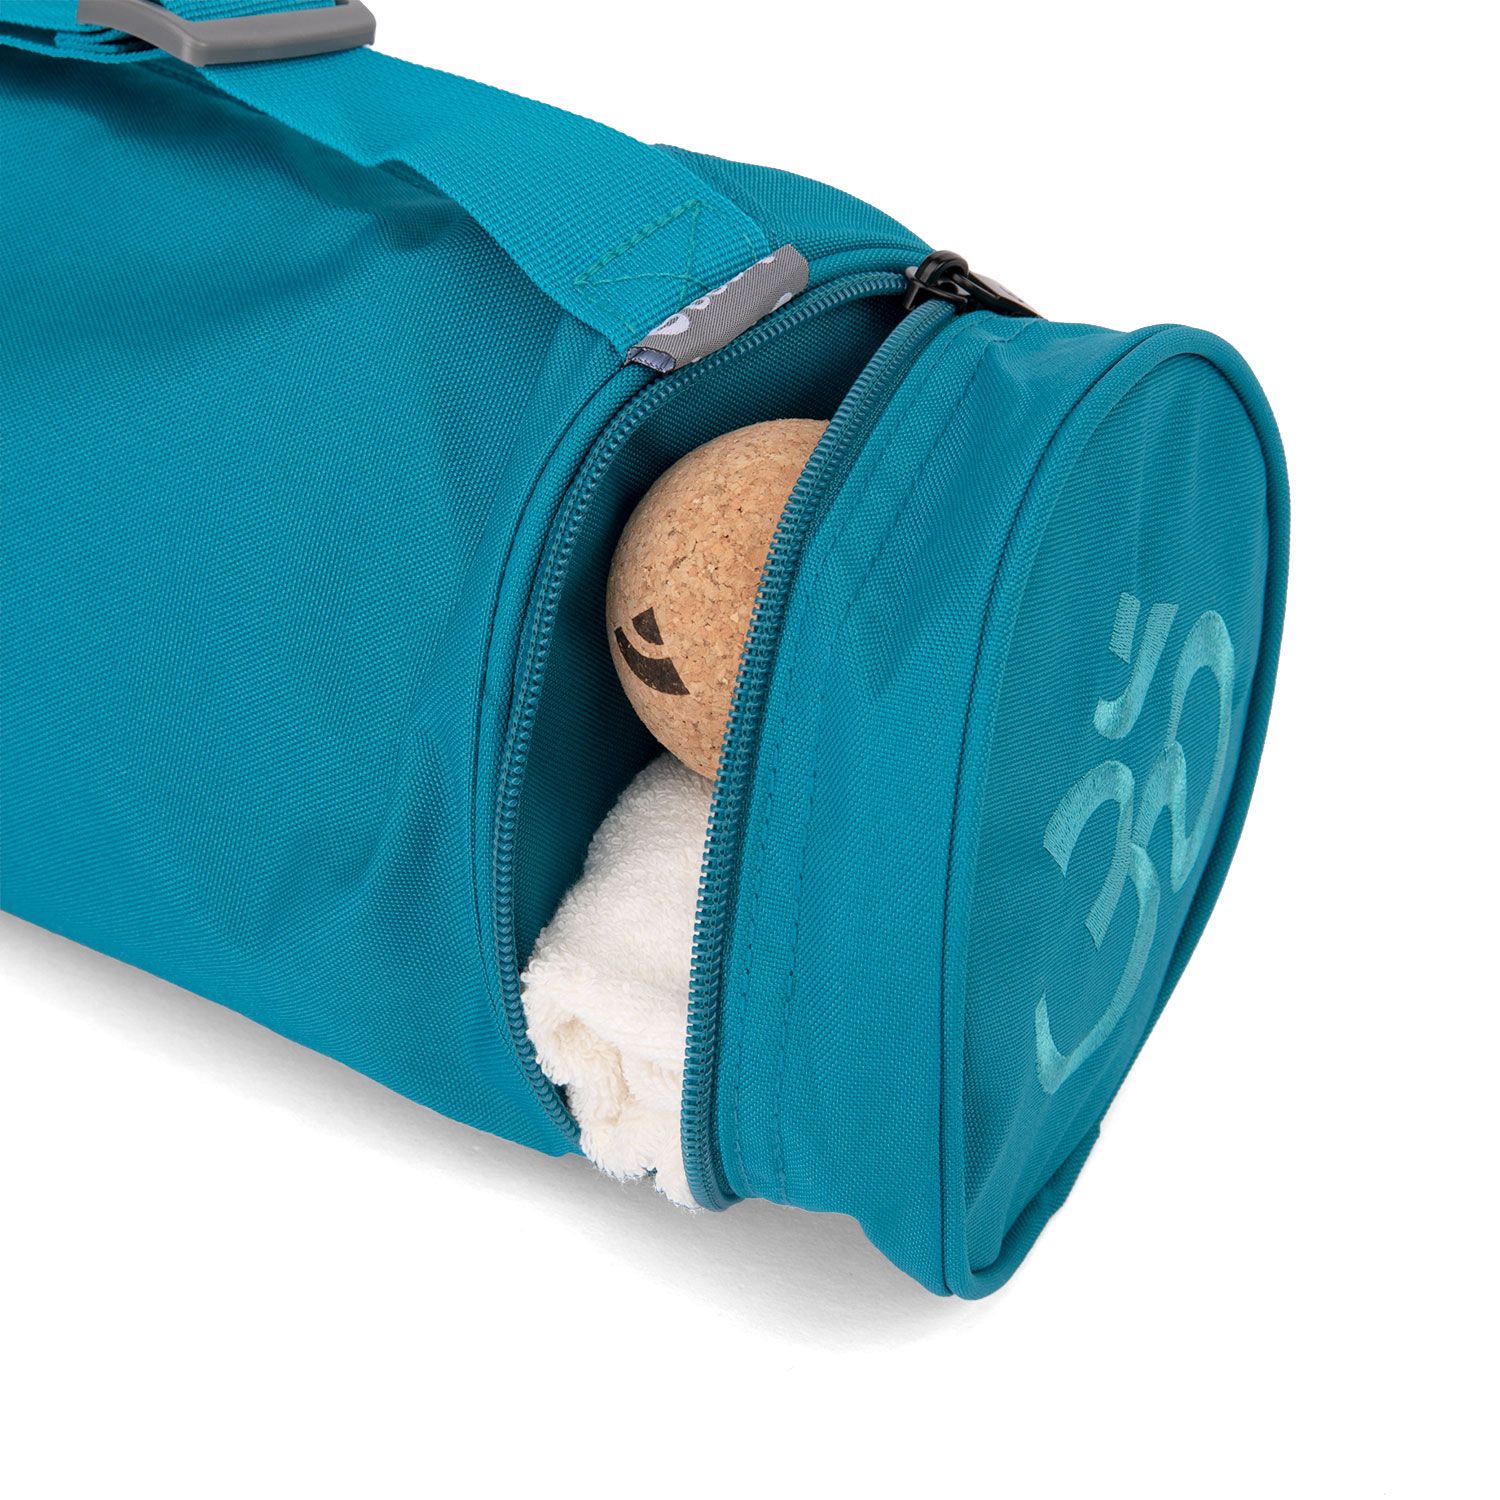 Yogamatten Tasche Asana Bag XL 70 türkis, Polyester/Polyamide bestickt mit OM